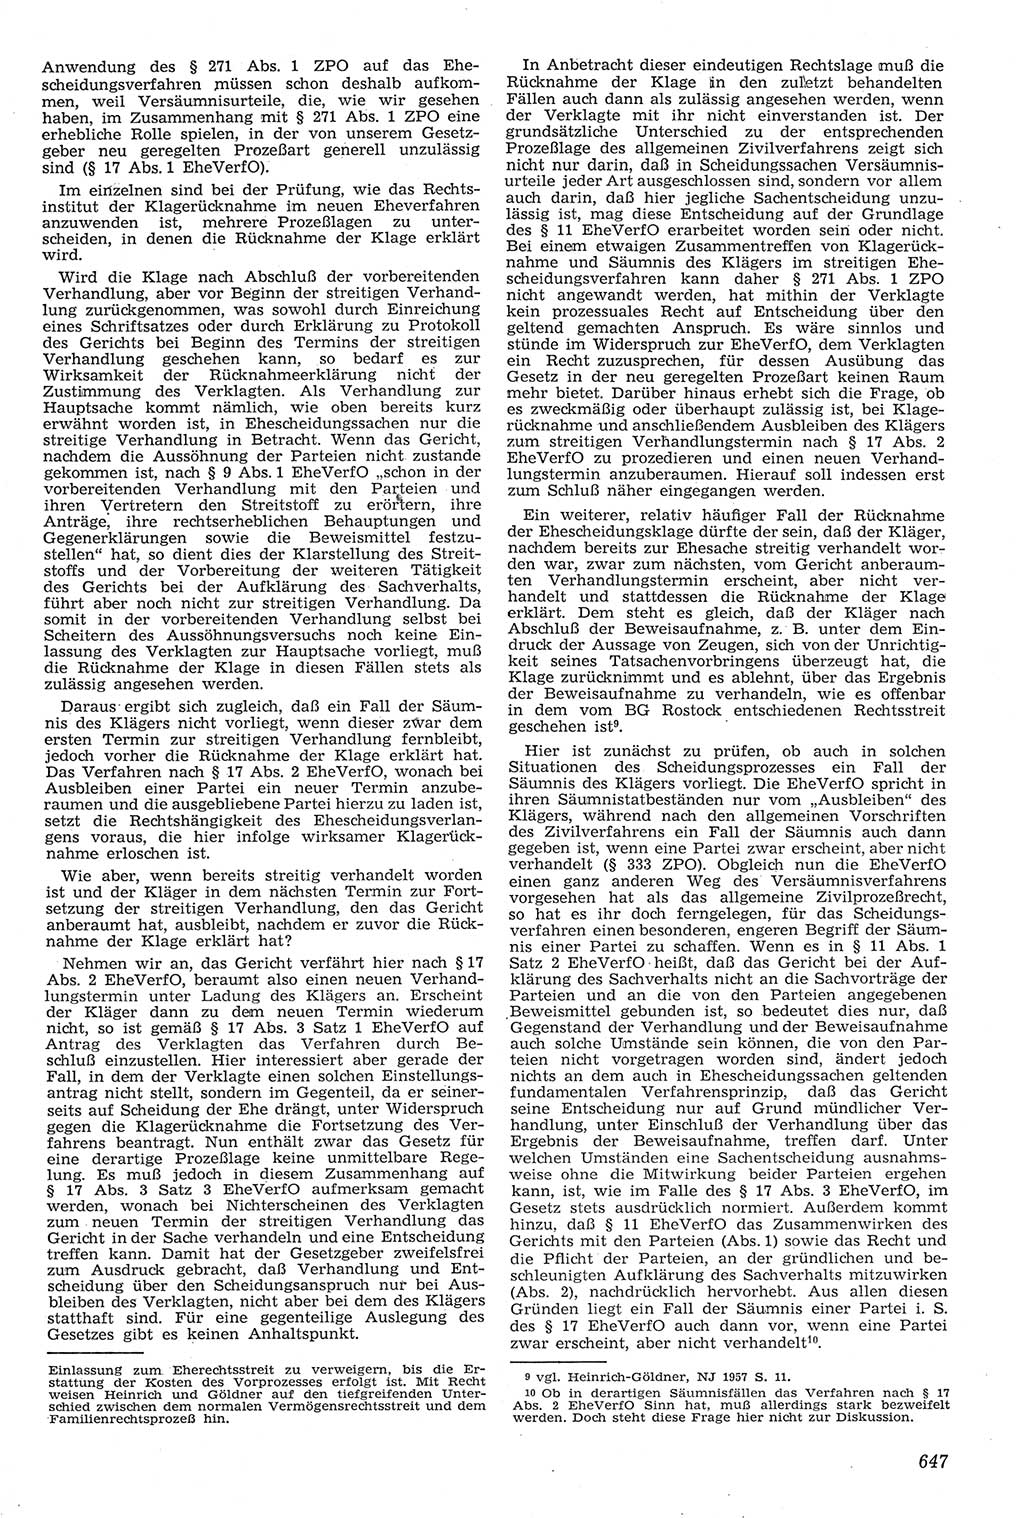 Neue Justiz (NJ), Zeitschrift für Recht und Rechtswissenschaft [Deutsche Demokratische Republik (DDR)], 11. Jahrgang 1957, Seite 647 (NJ DDR 1957, S. 647)